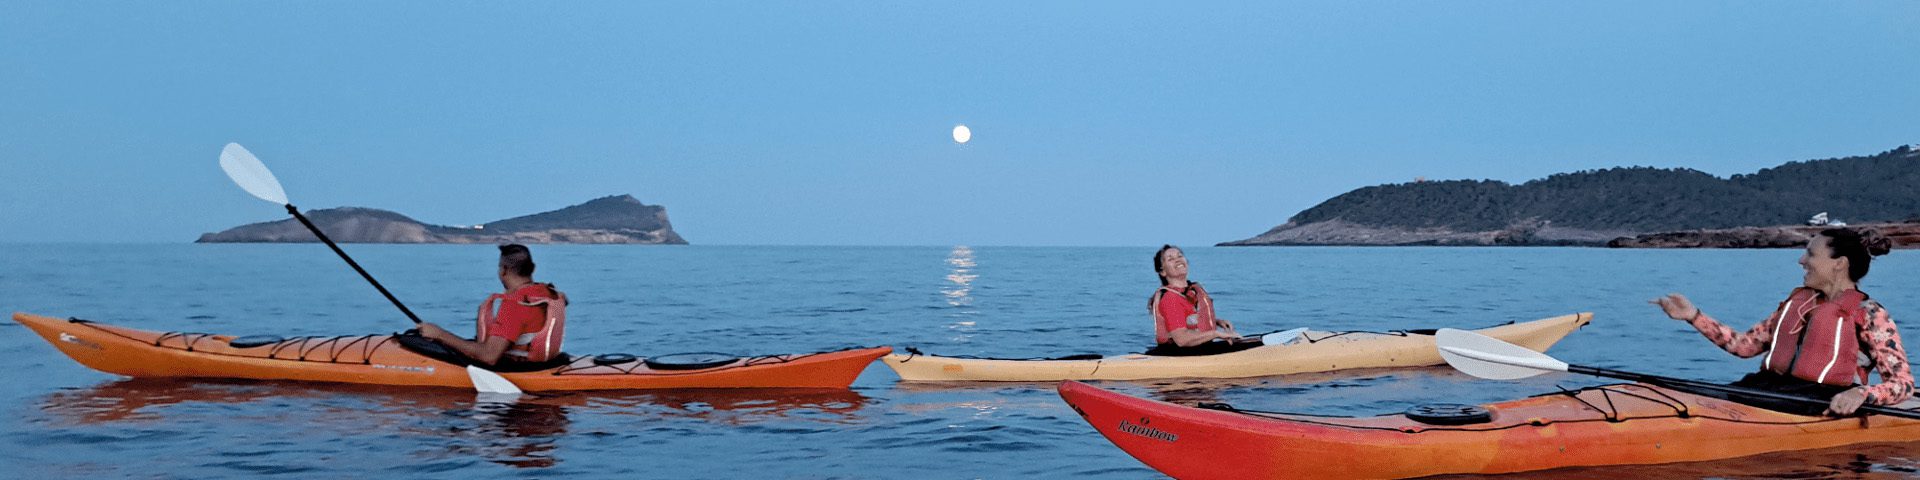 People in kayaks watching the full moon